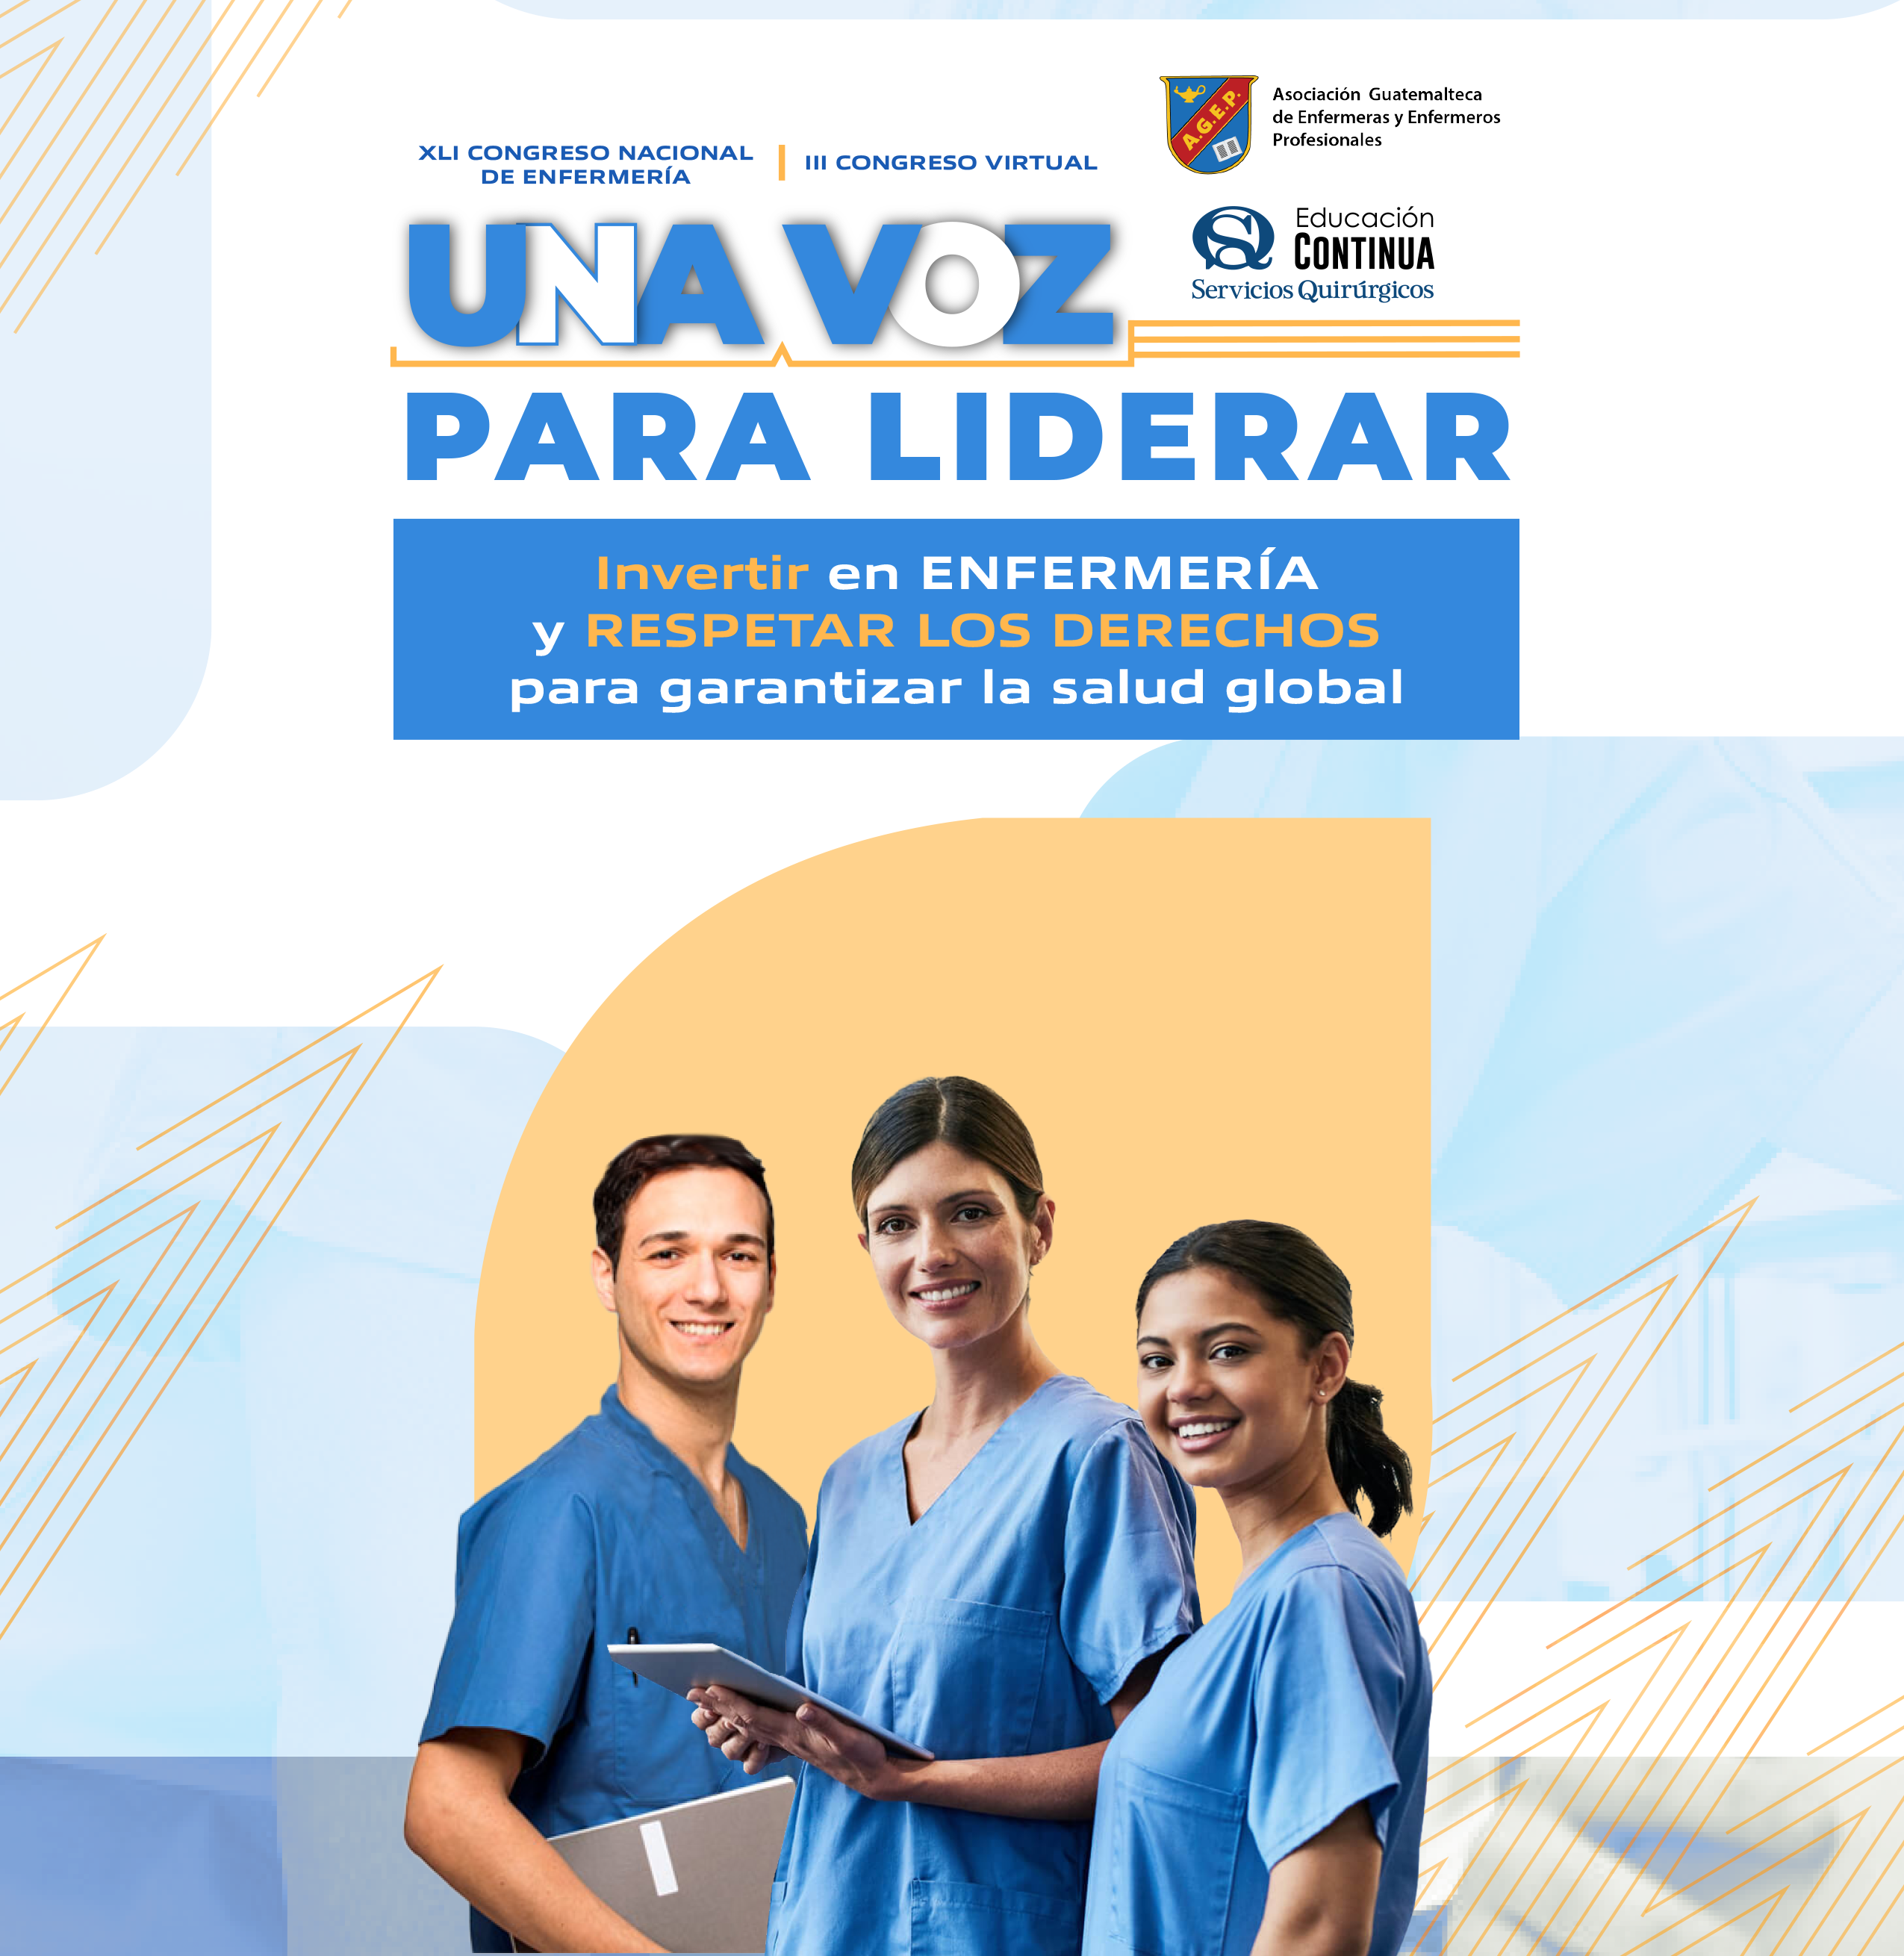 Asociación Guatemalteca de Enfermeras Profesionales Organizan el importante XLI Congreso Nacional…